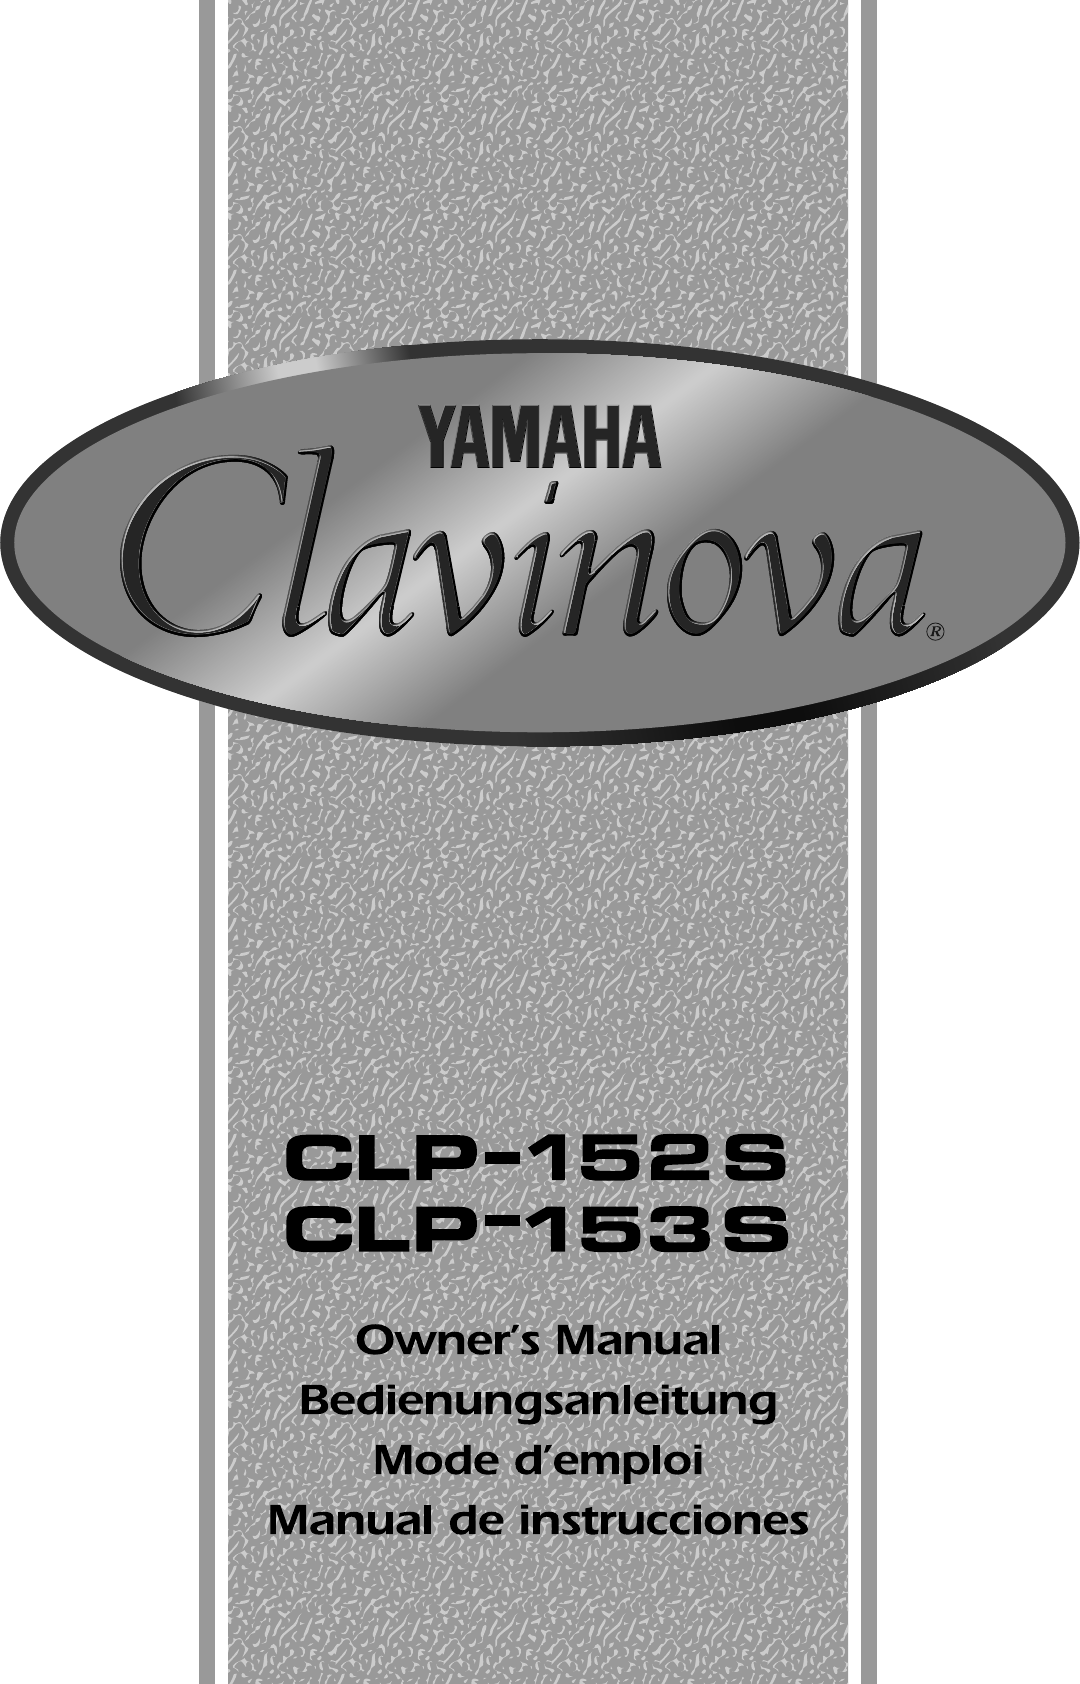 Bedienungsanleitung Yamaha CLP-153S (Seite 1 von 29) (Deutsch)